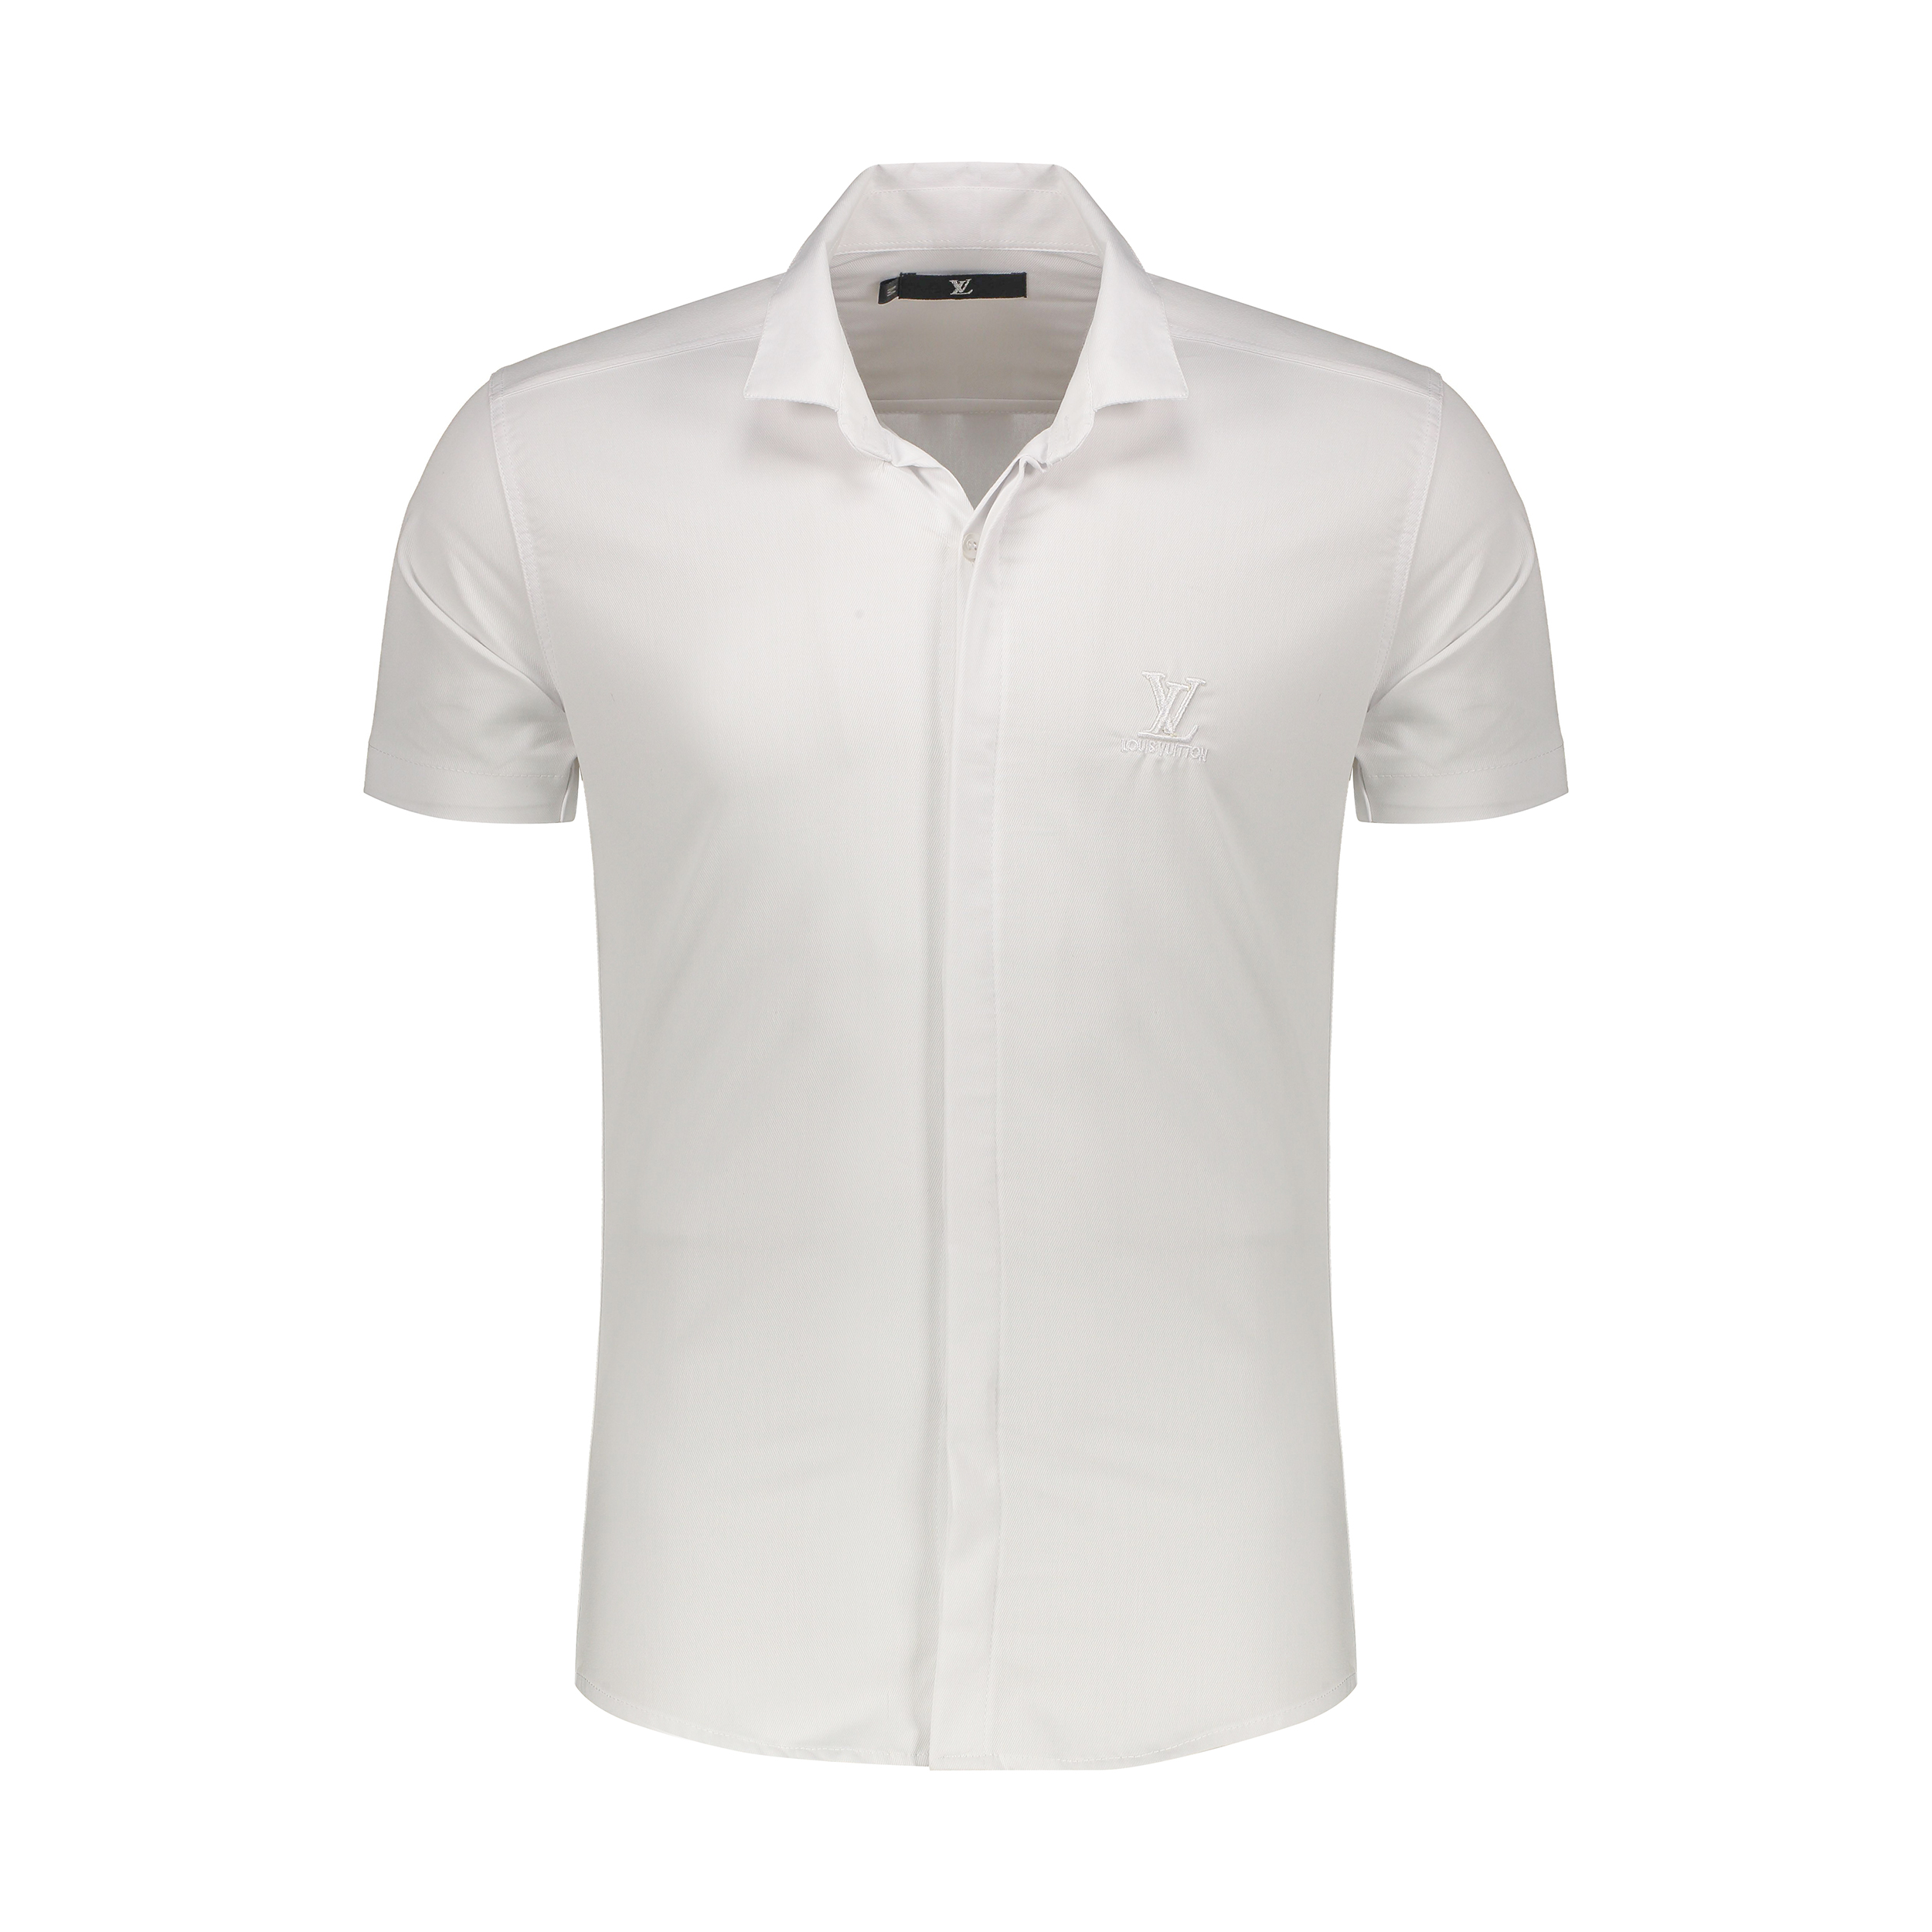 نکته خرید - قیمت روز  پیراهن آستین کوتاه مردانه مدل V 500 رنگ سفید خرید